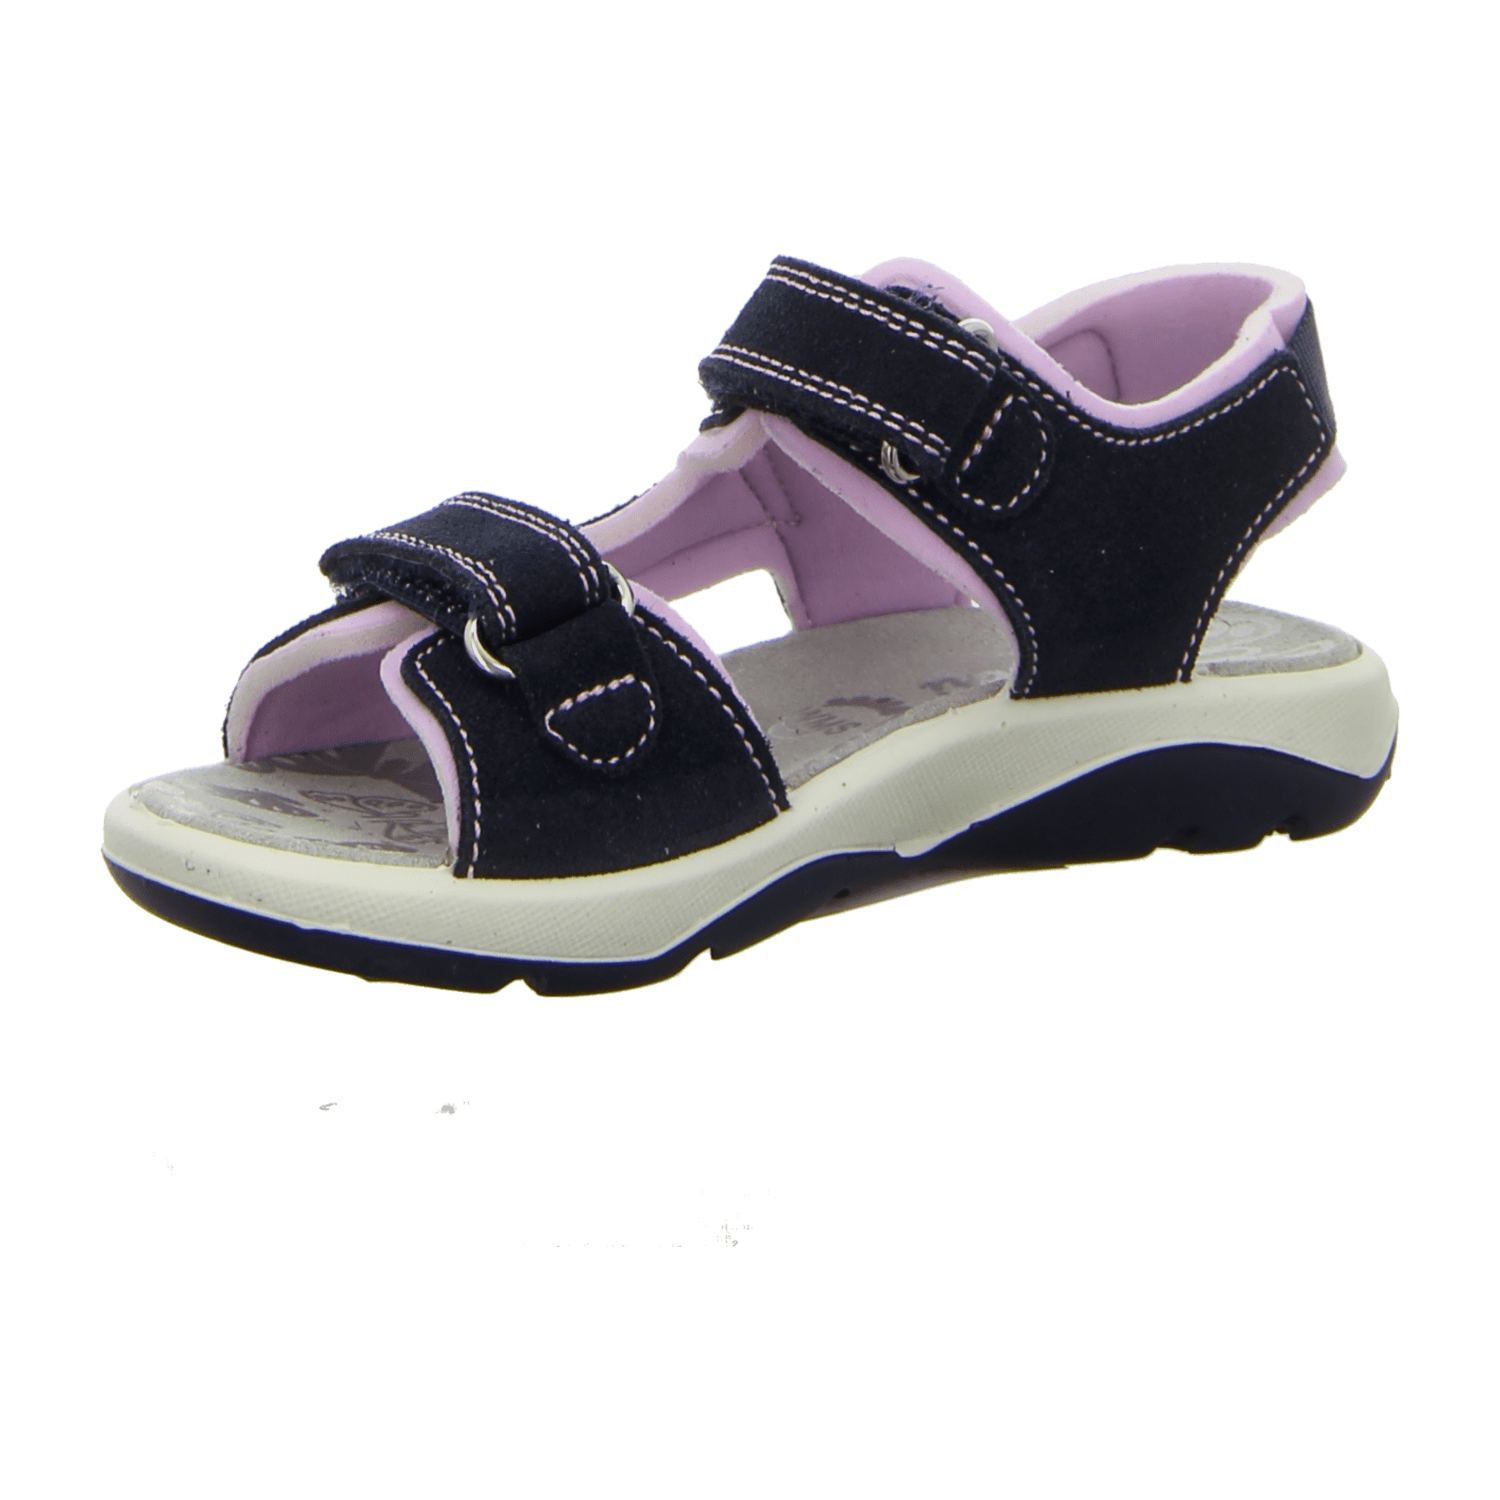 Lurchi Kinder Sandalen kaufen für Mädchen